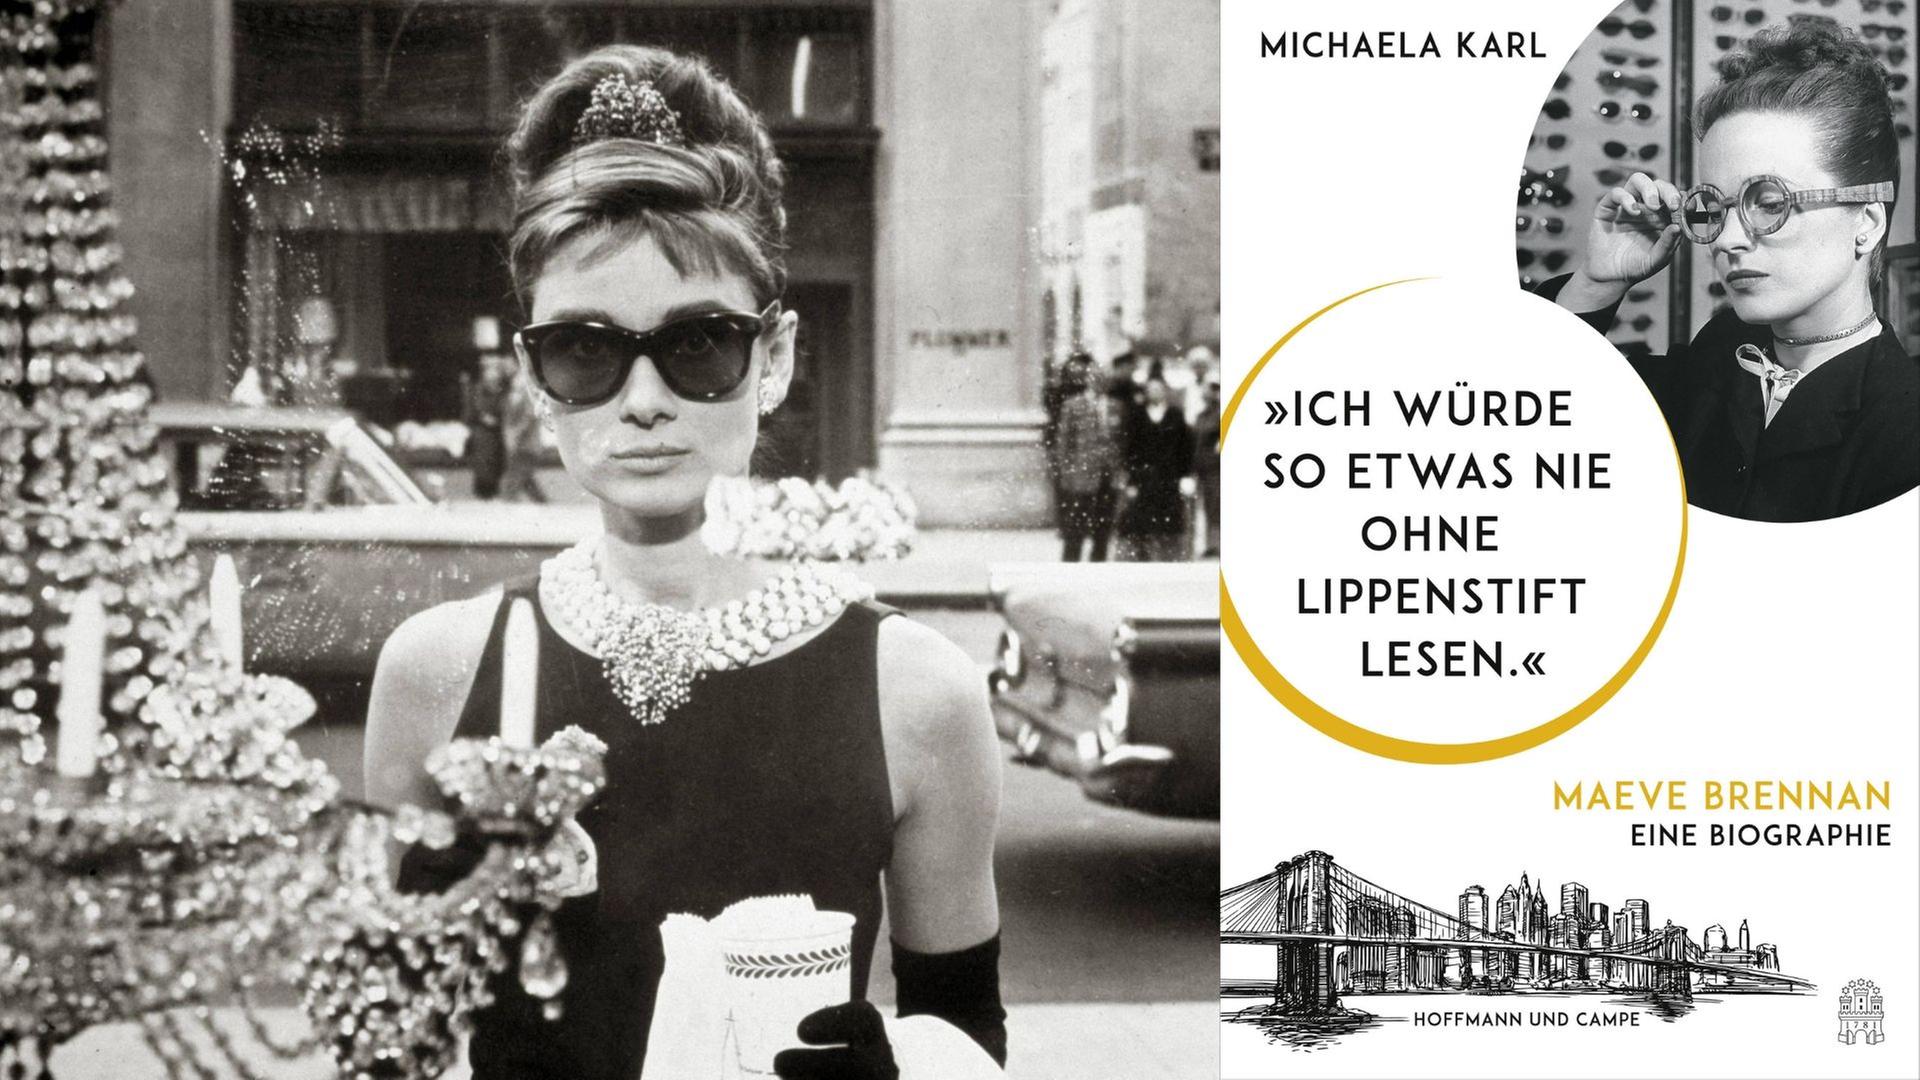 Zu sehen ist Audrey Hepburn in einem Filmausschnitt aus "Breakfast at Tiffanys" von 1961 und das Cover der Maeve Brennan Biographie von Michaela Karl: "Ich würde so etwas nie ohne Lippenstift lesen."